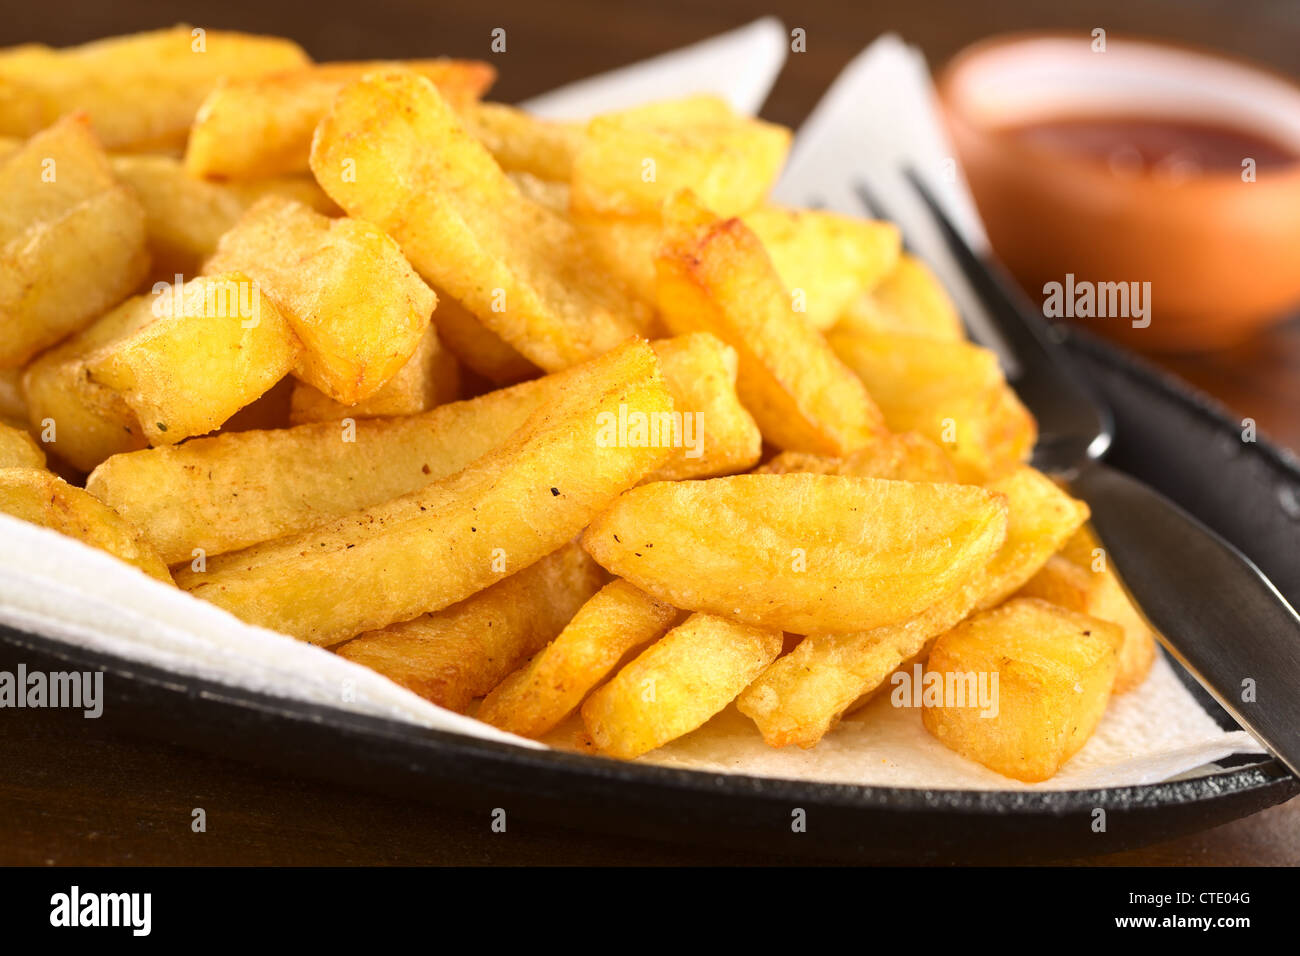 Les frites avec du ketchup (Selective Focus Focus, un tiers dans les frites) Banque D'Images